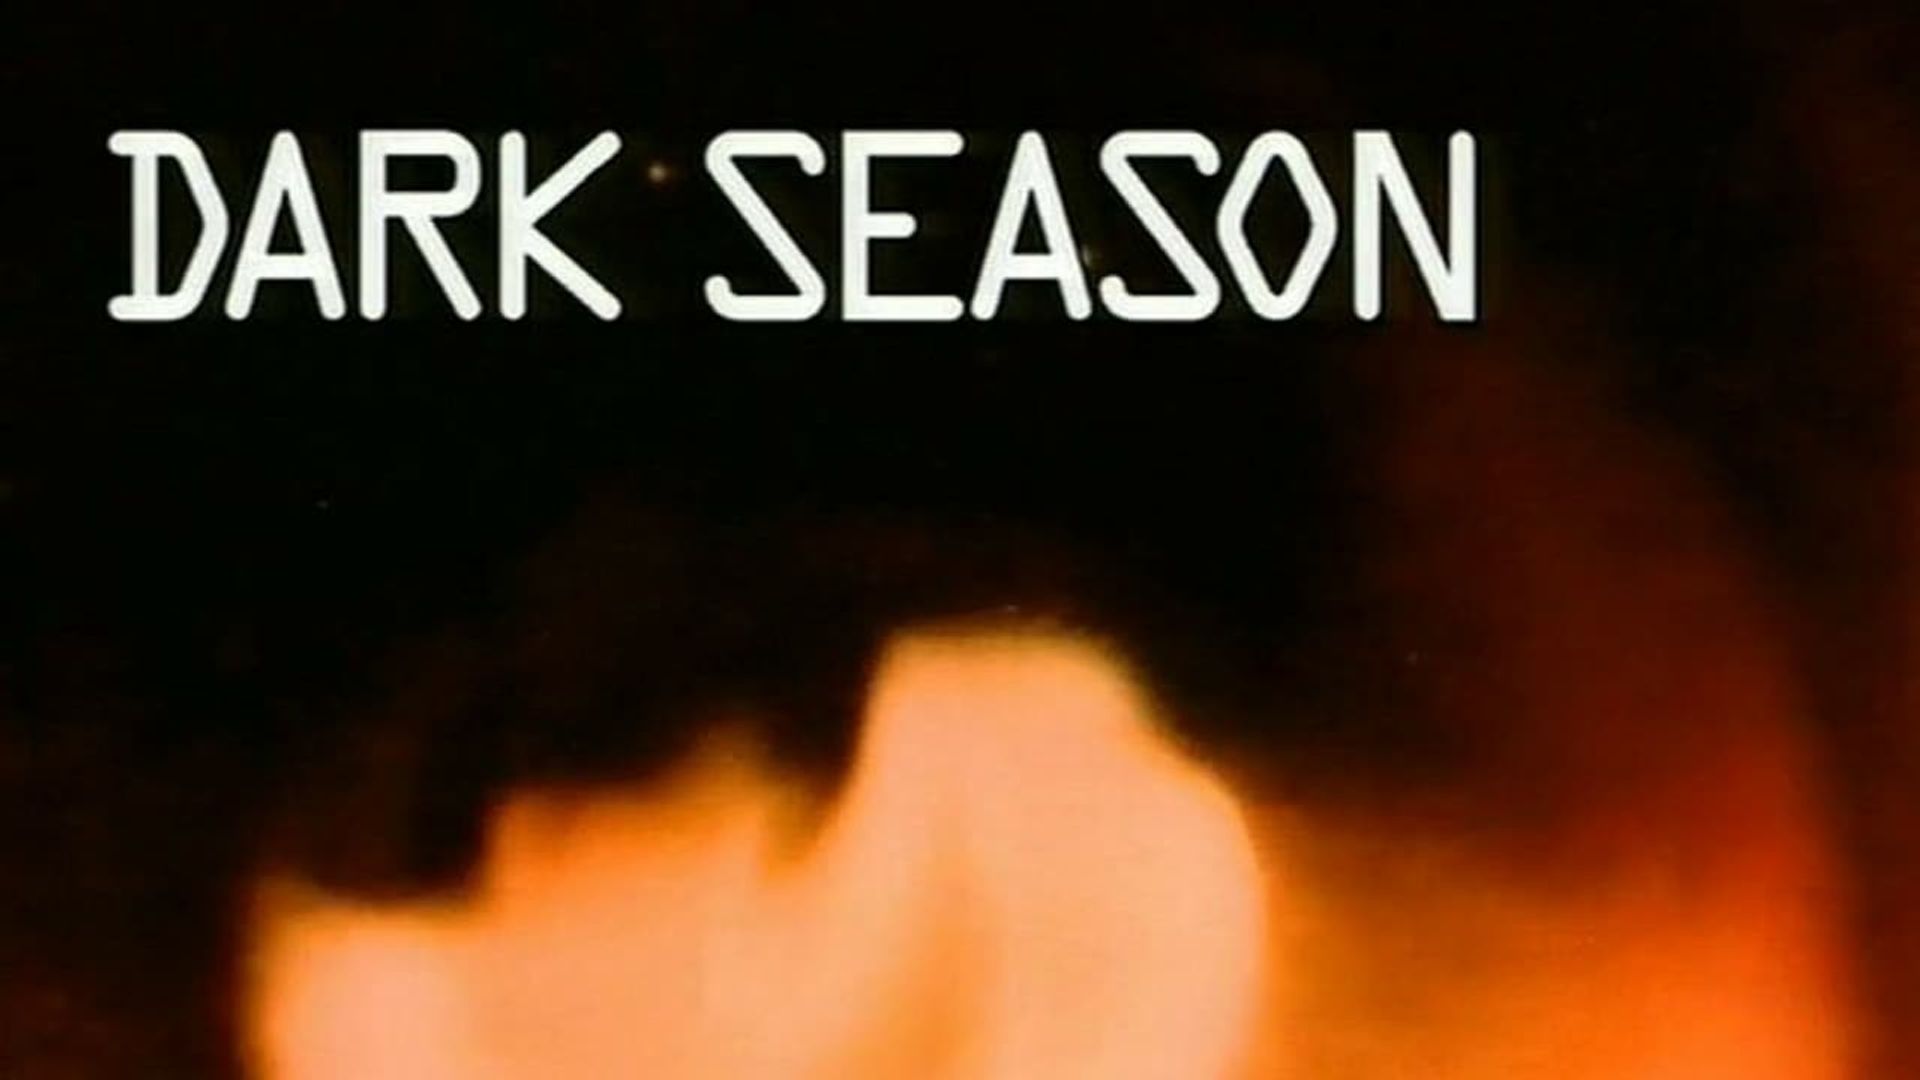 Dark Season background